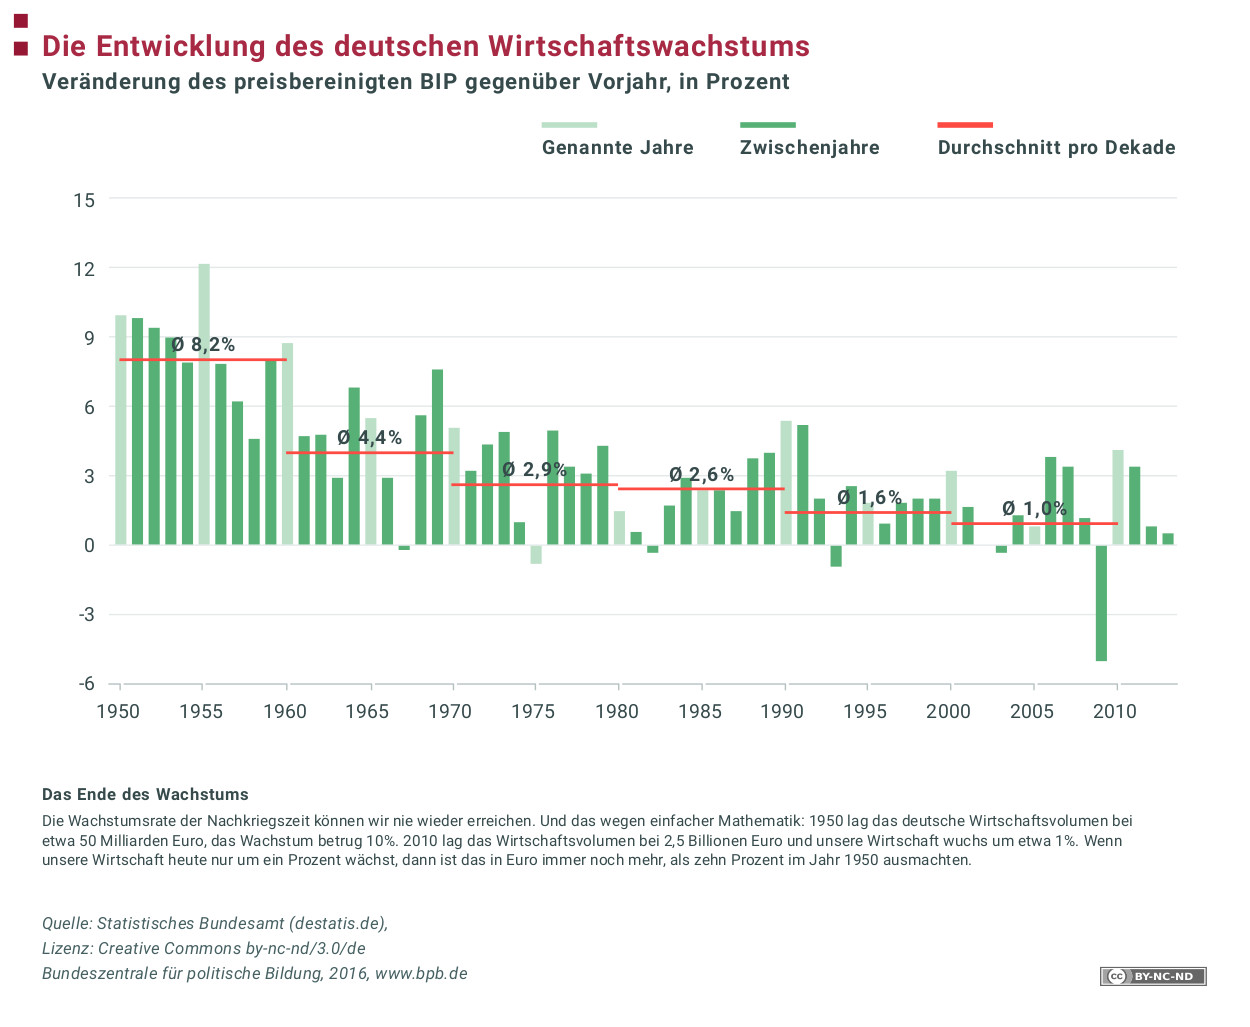 Die entwicklung des deutschen wirtschaftswachstums